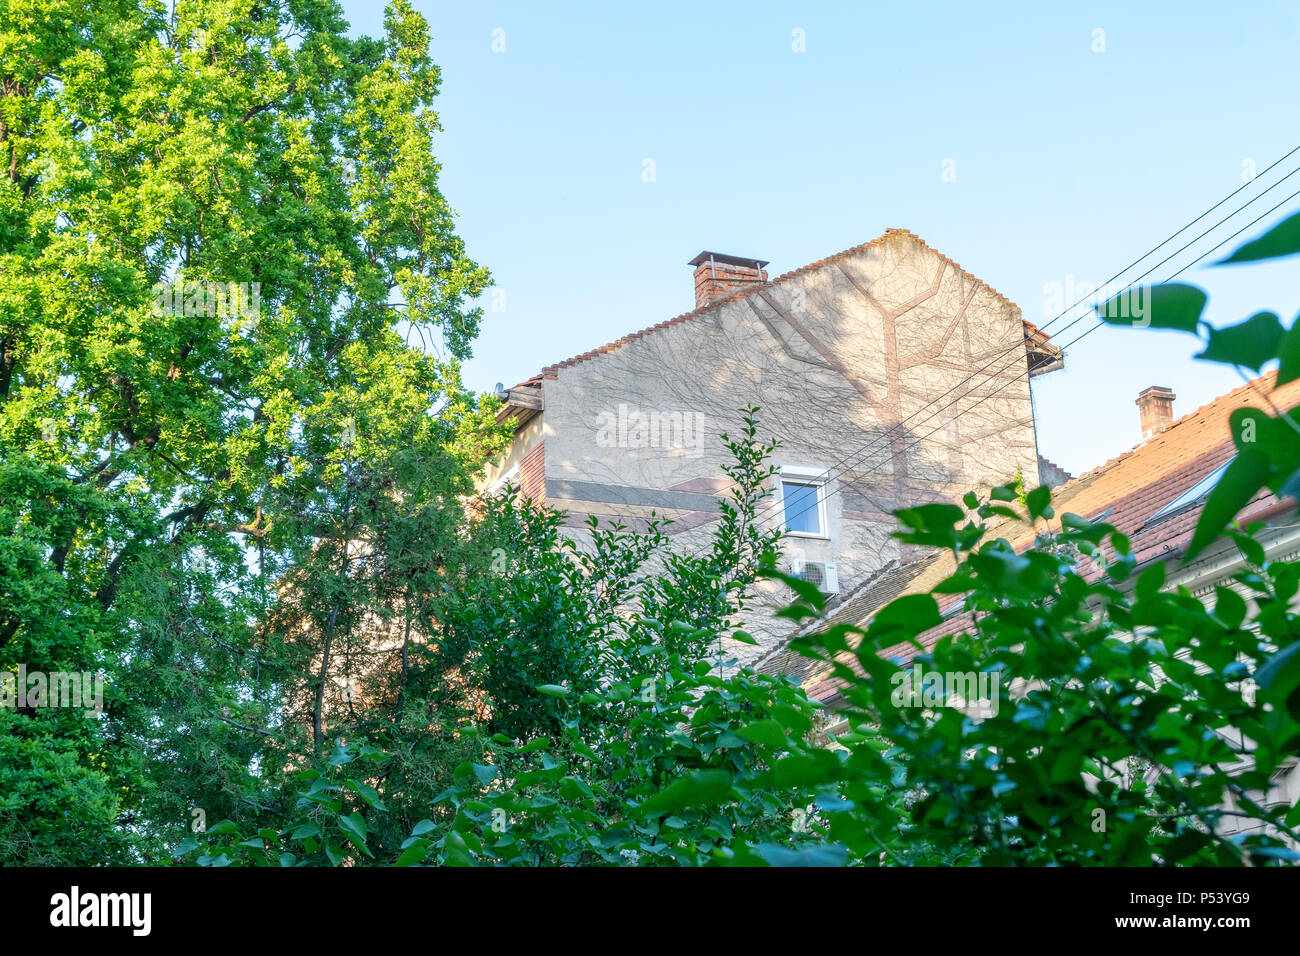 Grünes Wohnen in der Stadt, der städtischen Umwelt Konzept. Oradea, Rumänien. Stockfoto